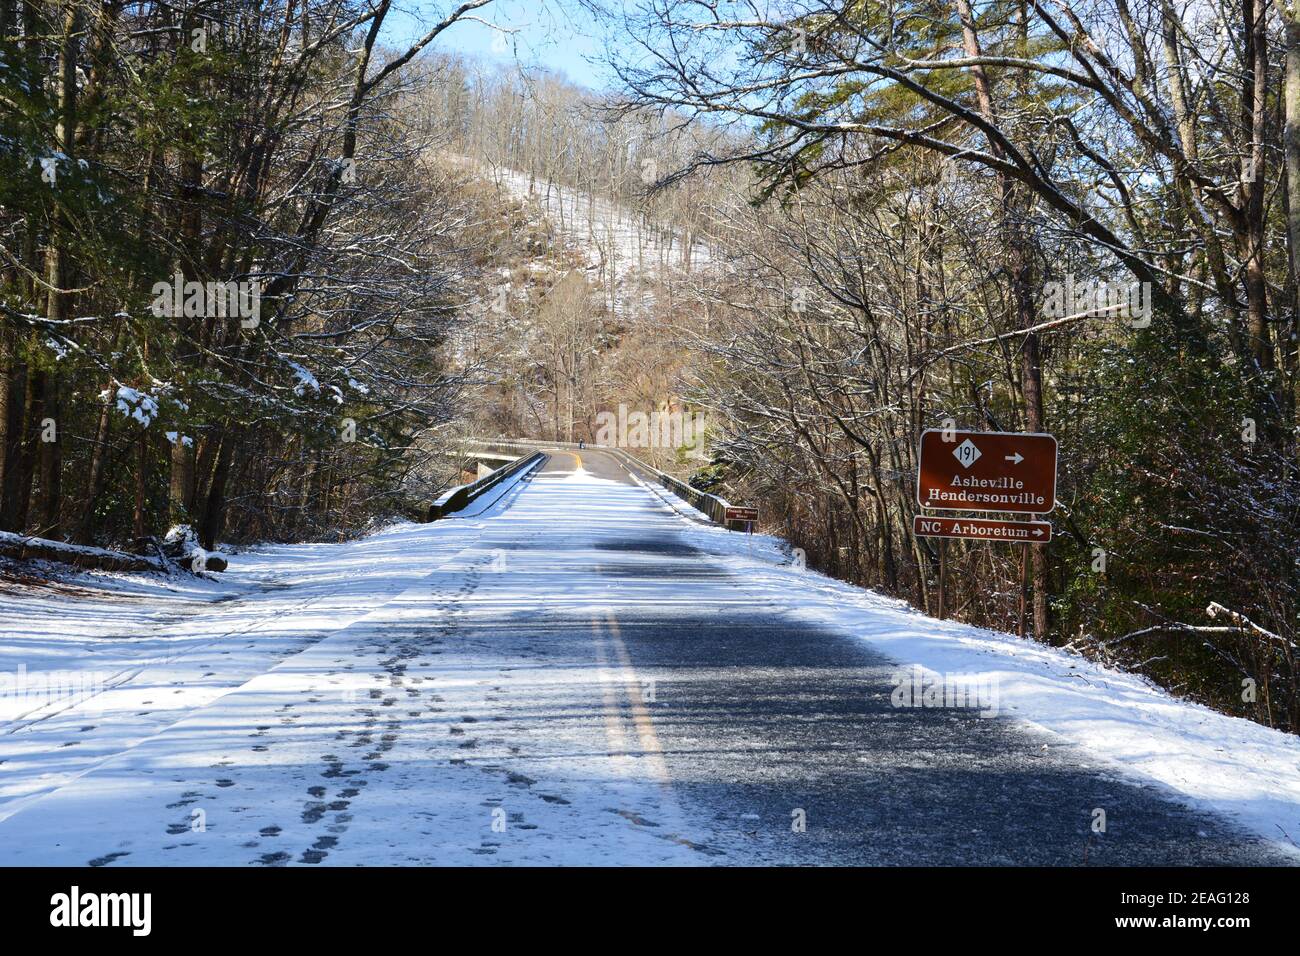 Impronte nel ghiaccio e neve che ricopra la strada su una sezione della Blue Ridge Parkway chiusa alle auto per l'inverno vicino Asheville, Carolina del Nord Foto Stock